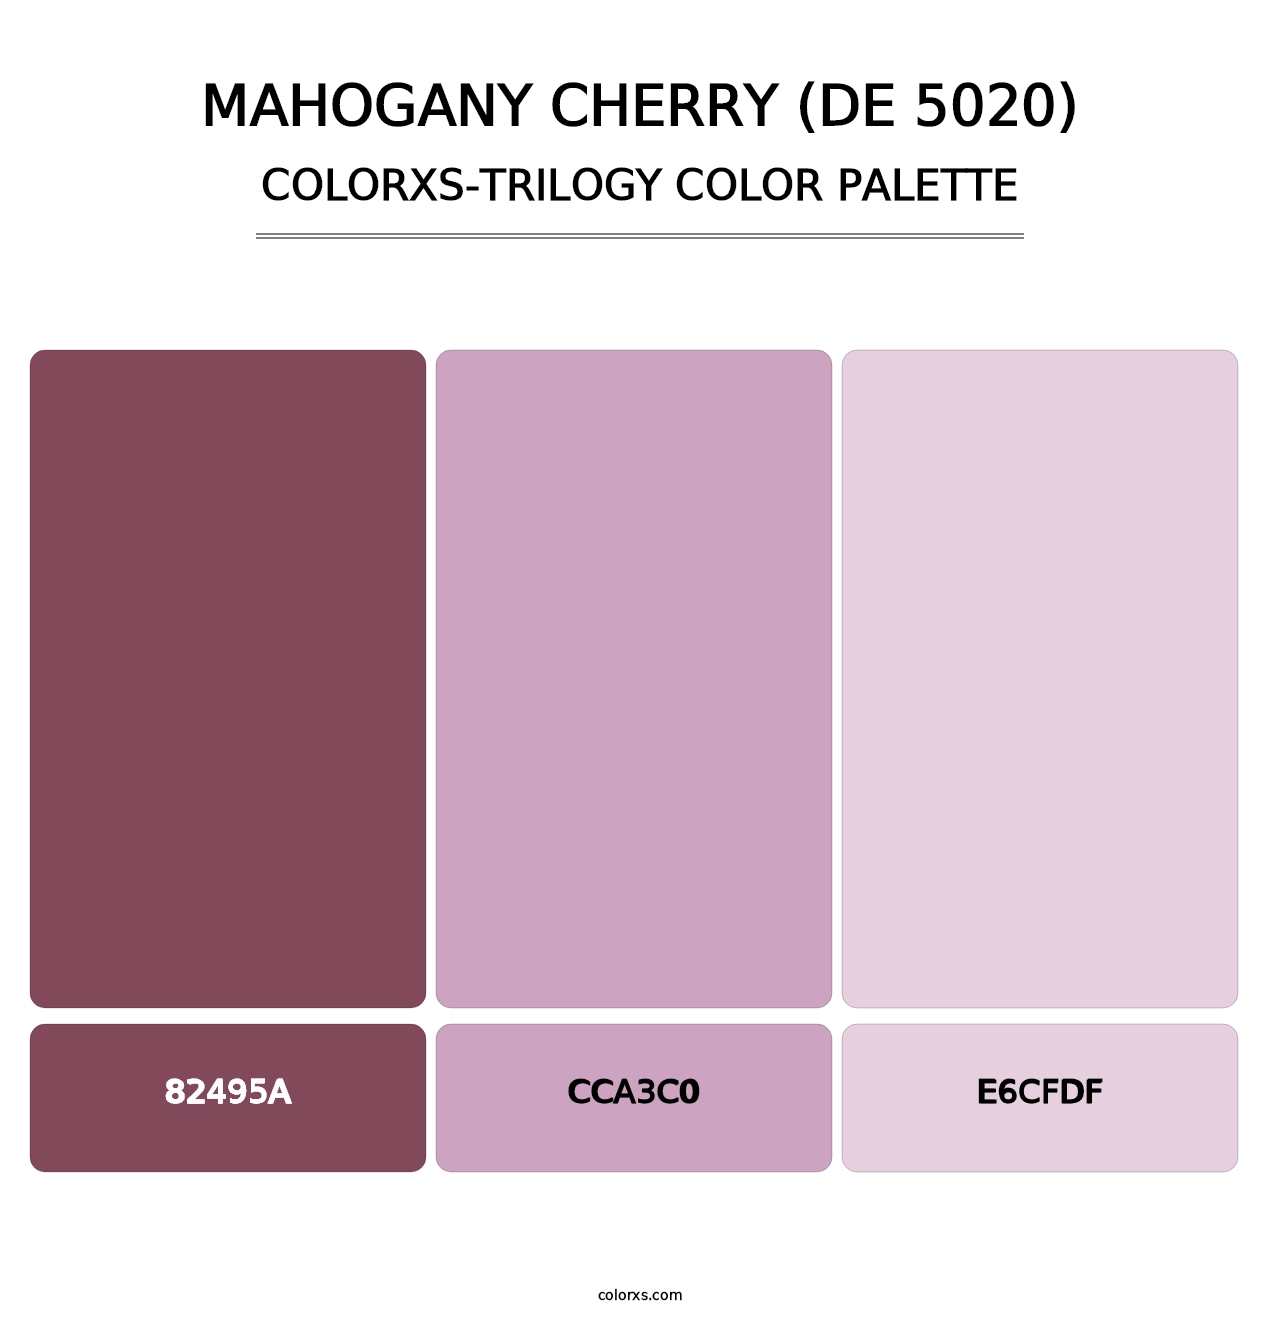 Mahogany Cherry (DE 5020) - Colorxs Trilogy Palette